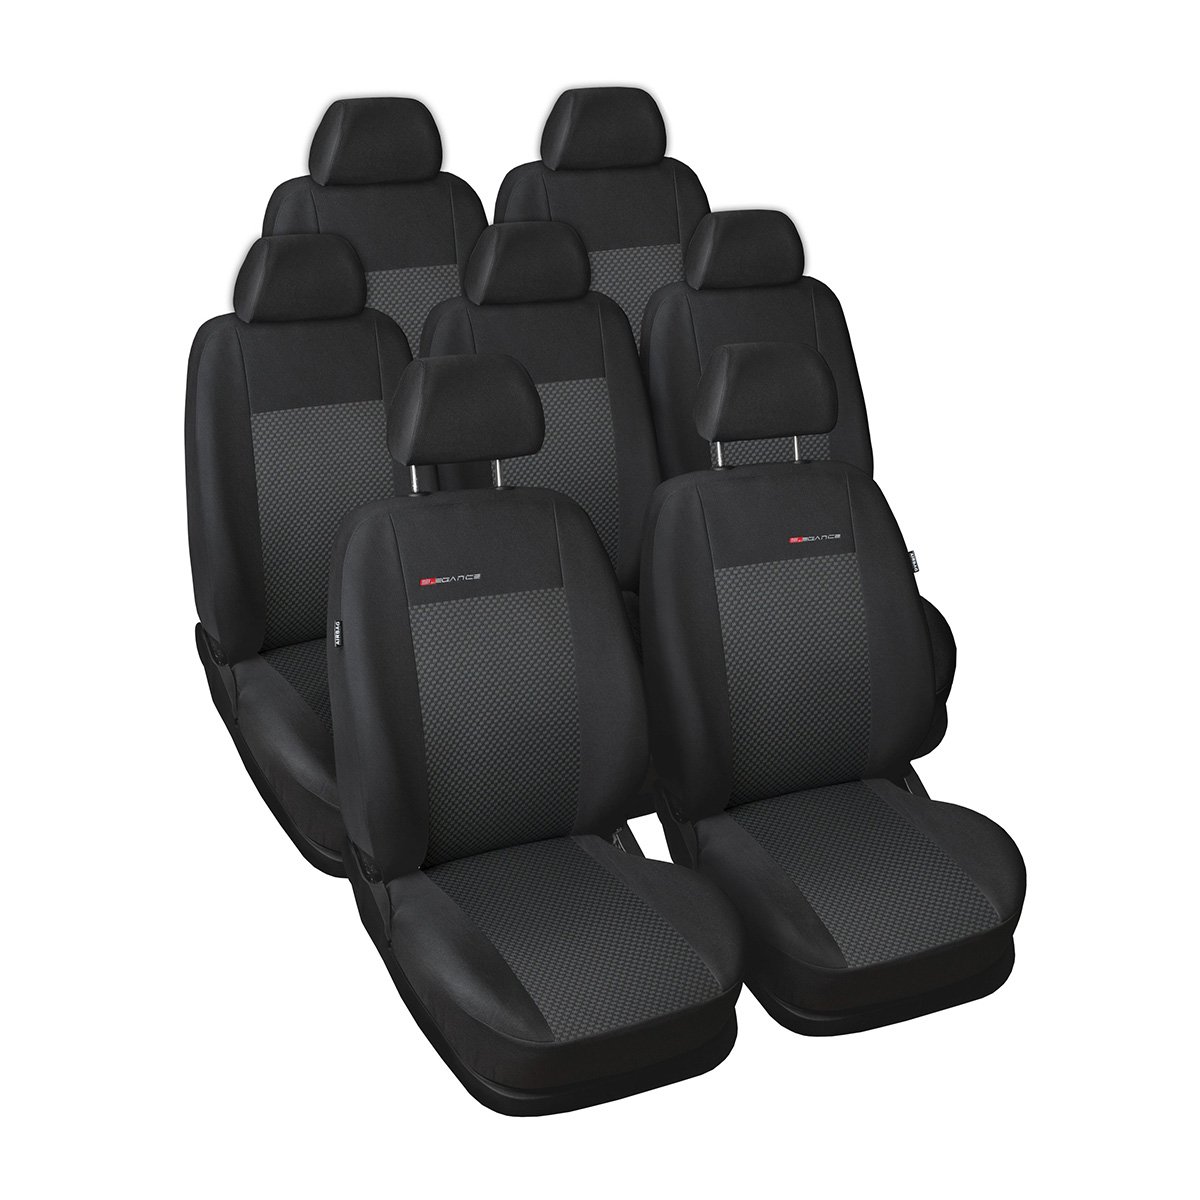 Mossa - Maßgeschneiderte Sitzbezüge Auto kompatibel mit Ford S-MAX MPV (2006-2015) - 7 Sitze - Autositzbezüge Schonbezüge für Autositze - E3 von Mossa